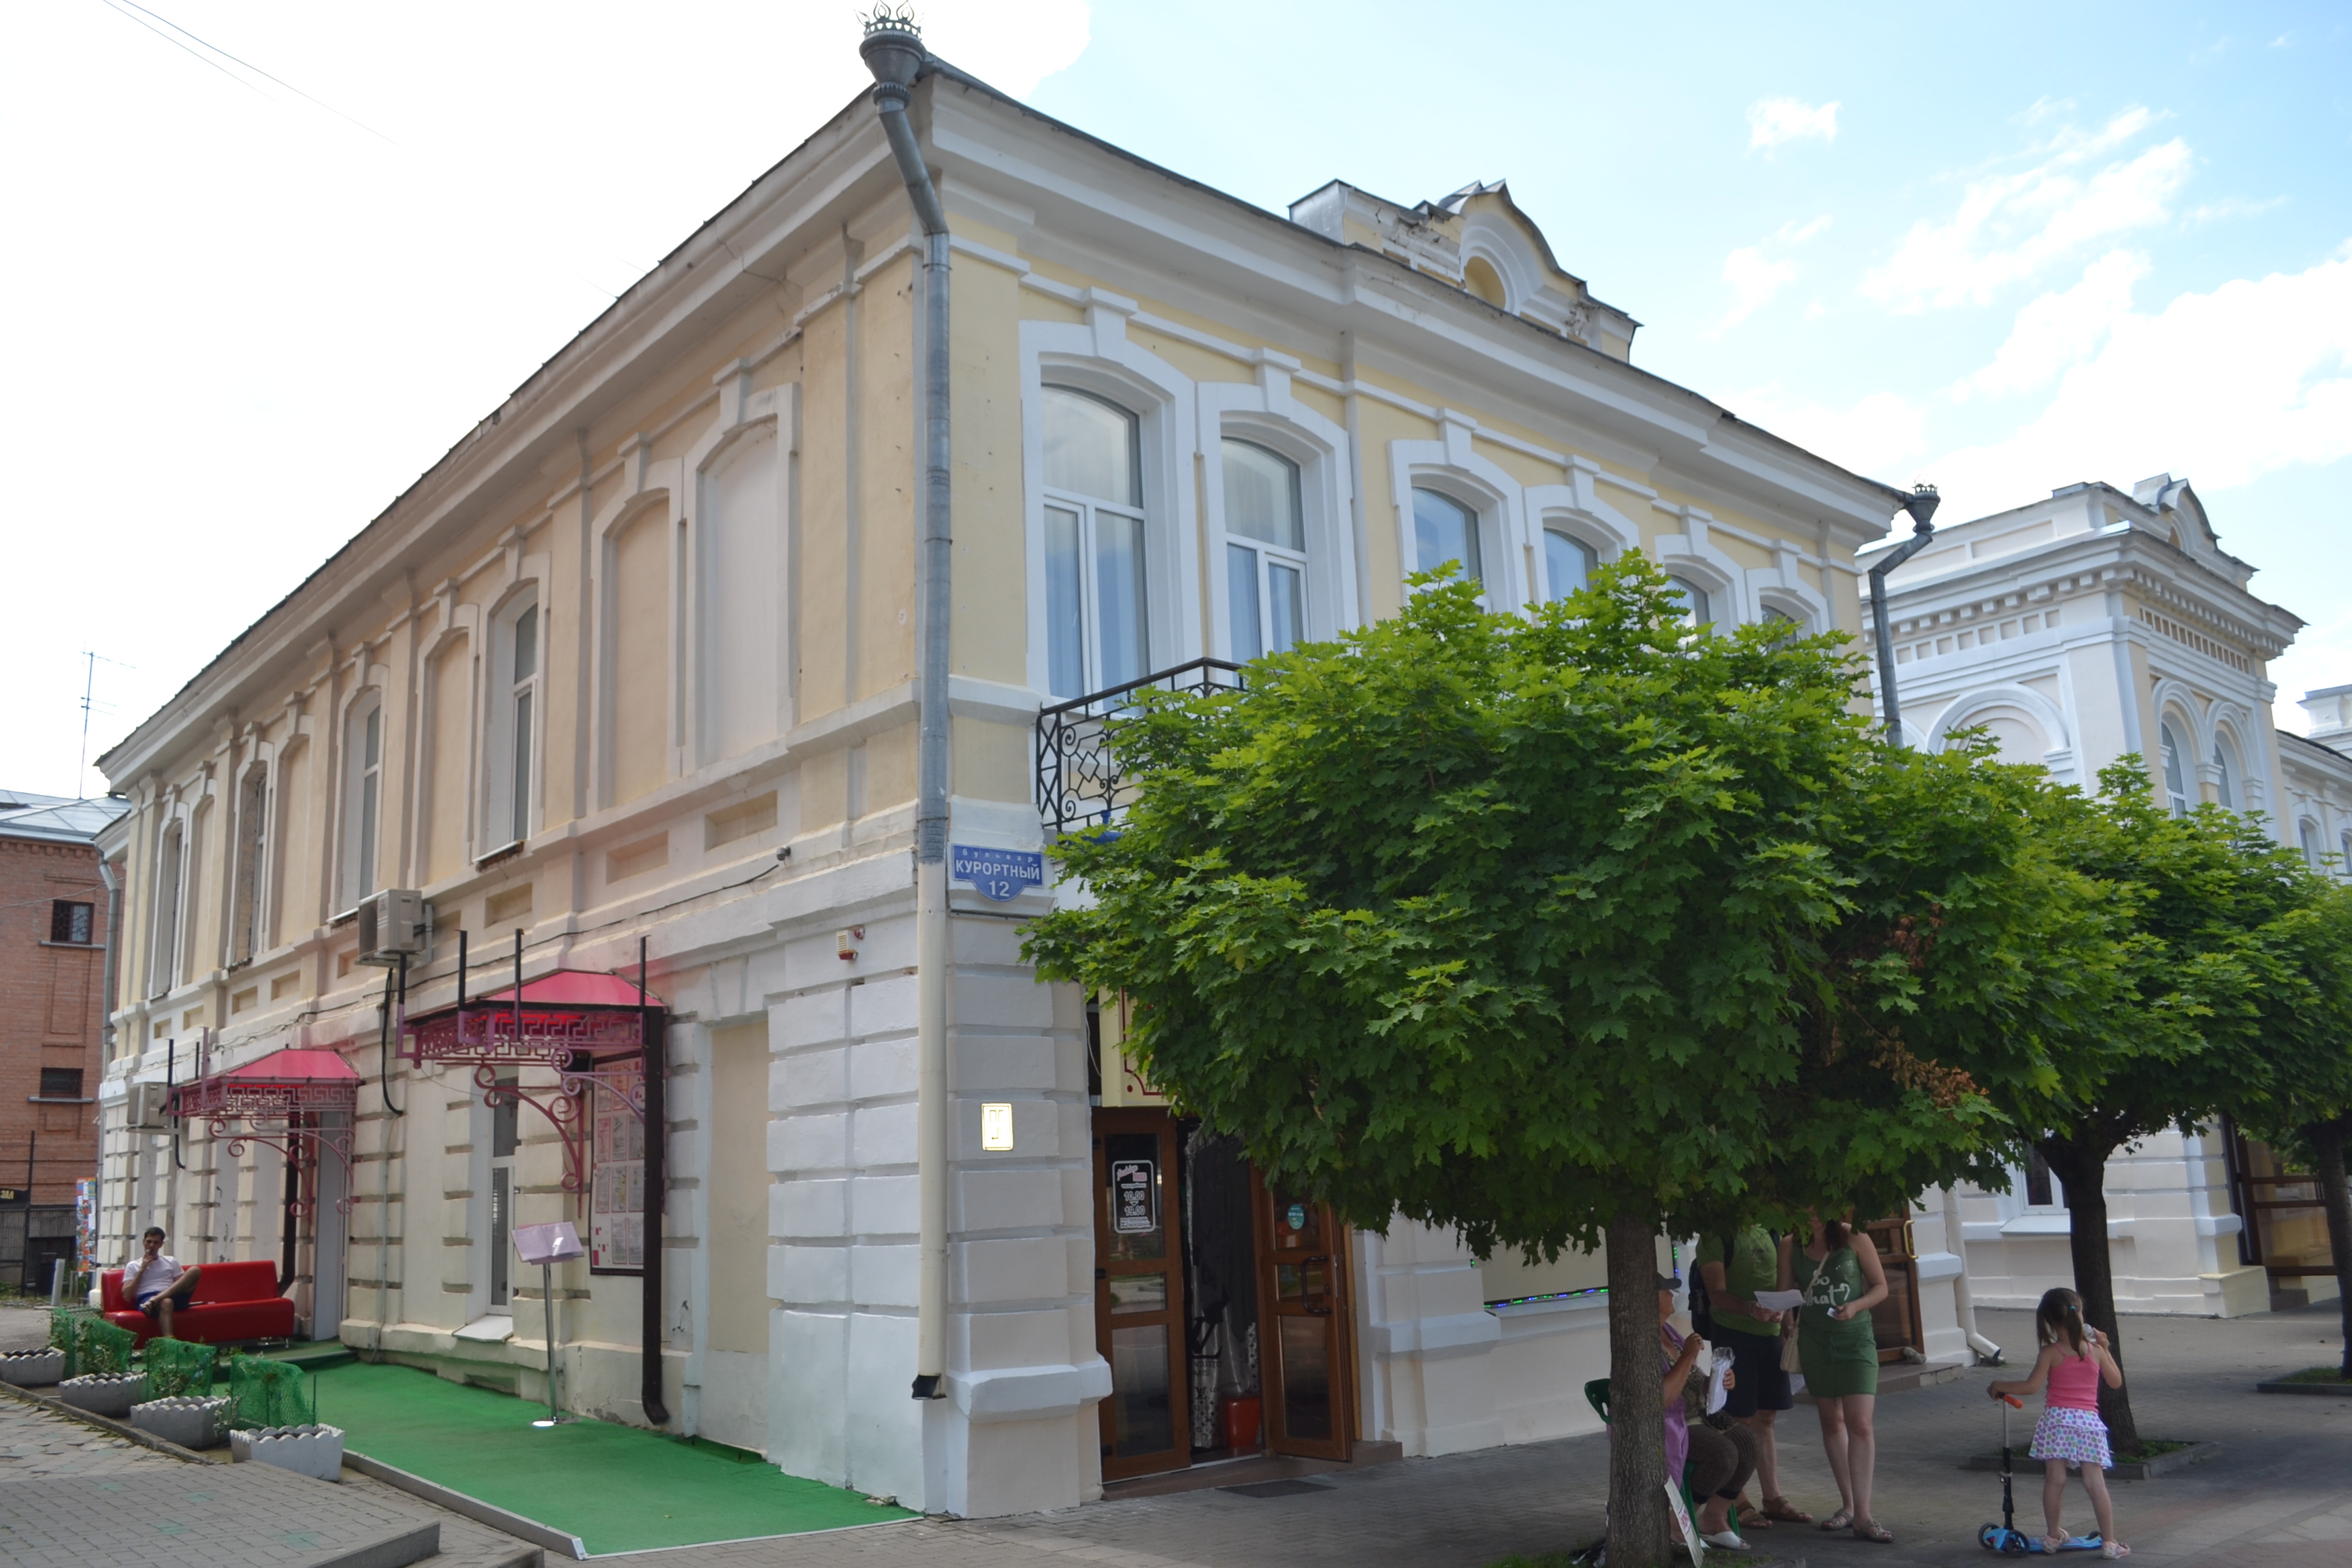 Гостиница Зипалова в Кисловодске